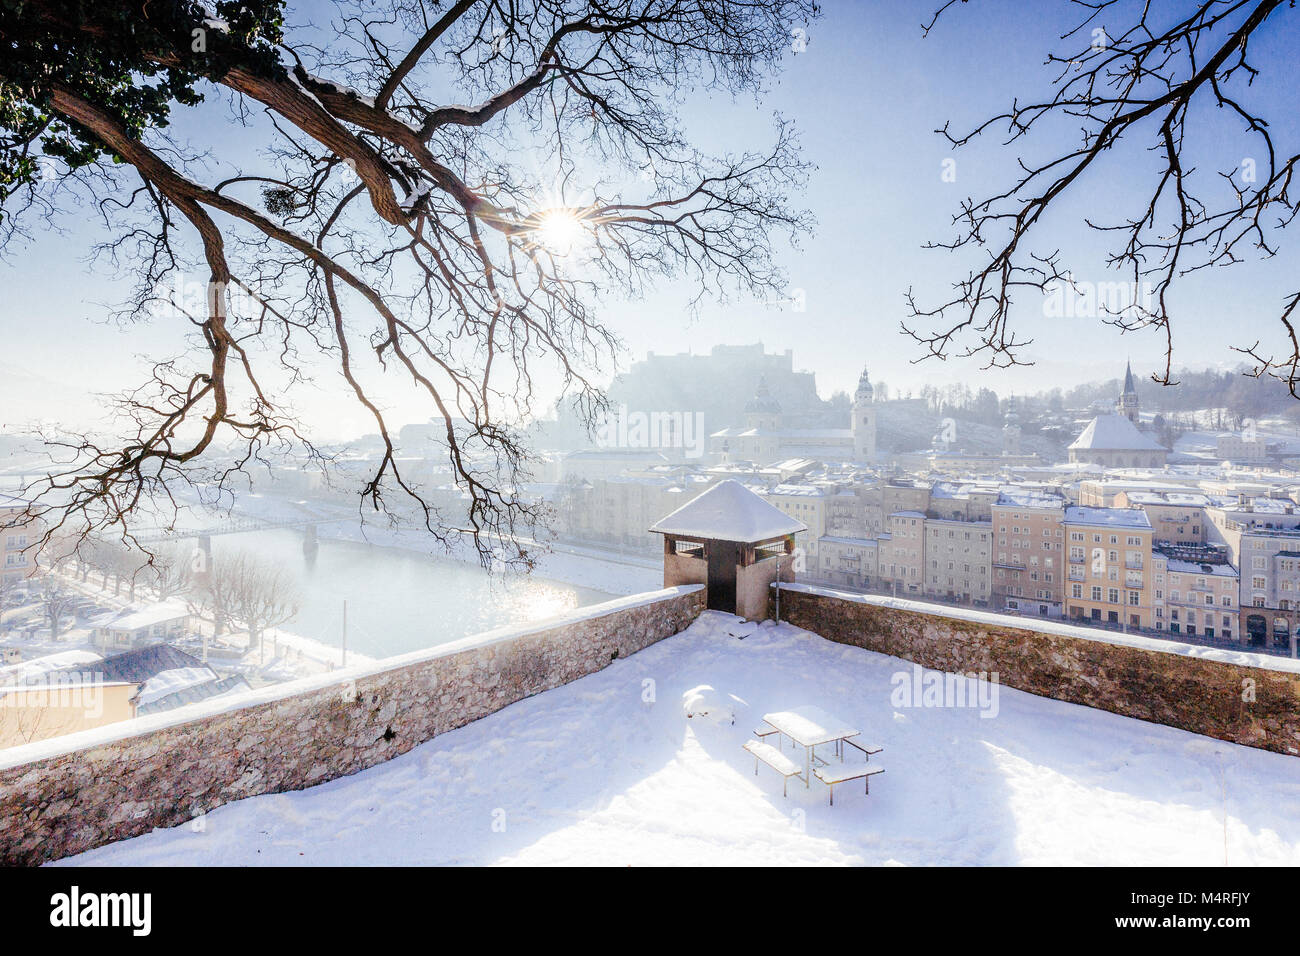 Visualizzazione classica del centro storico della città di Salisburgo con la famosa fortezza di Hohensalzburg e il fiume Salzach in una giornata di sole in inverno, Austria Foto Stock